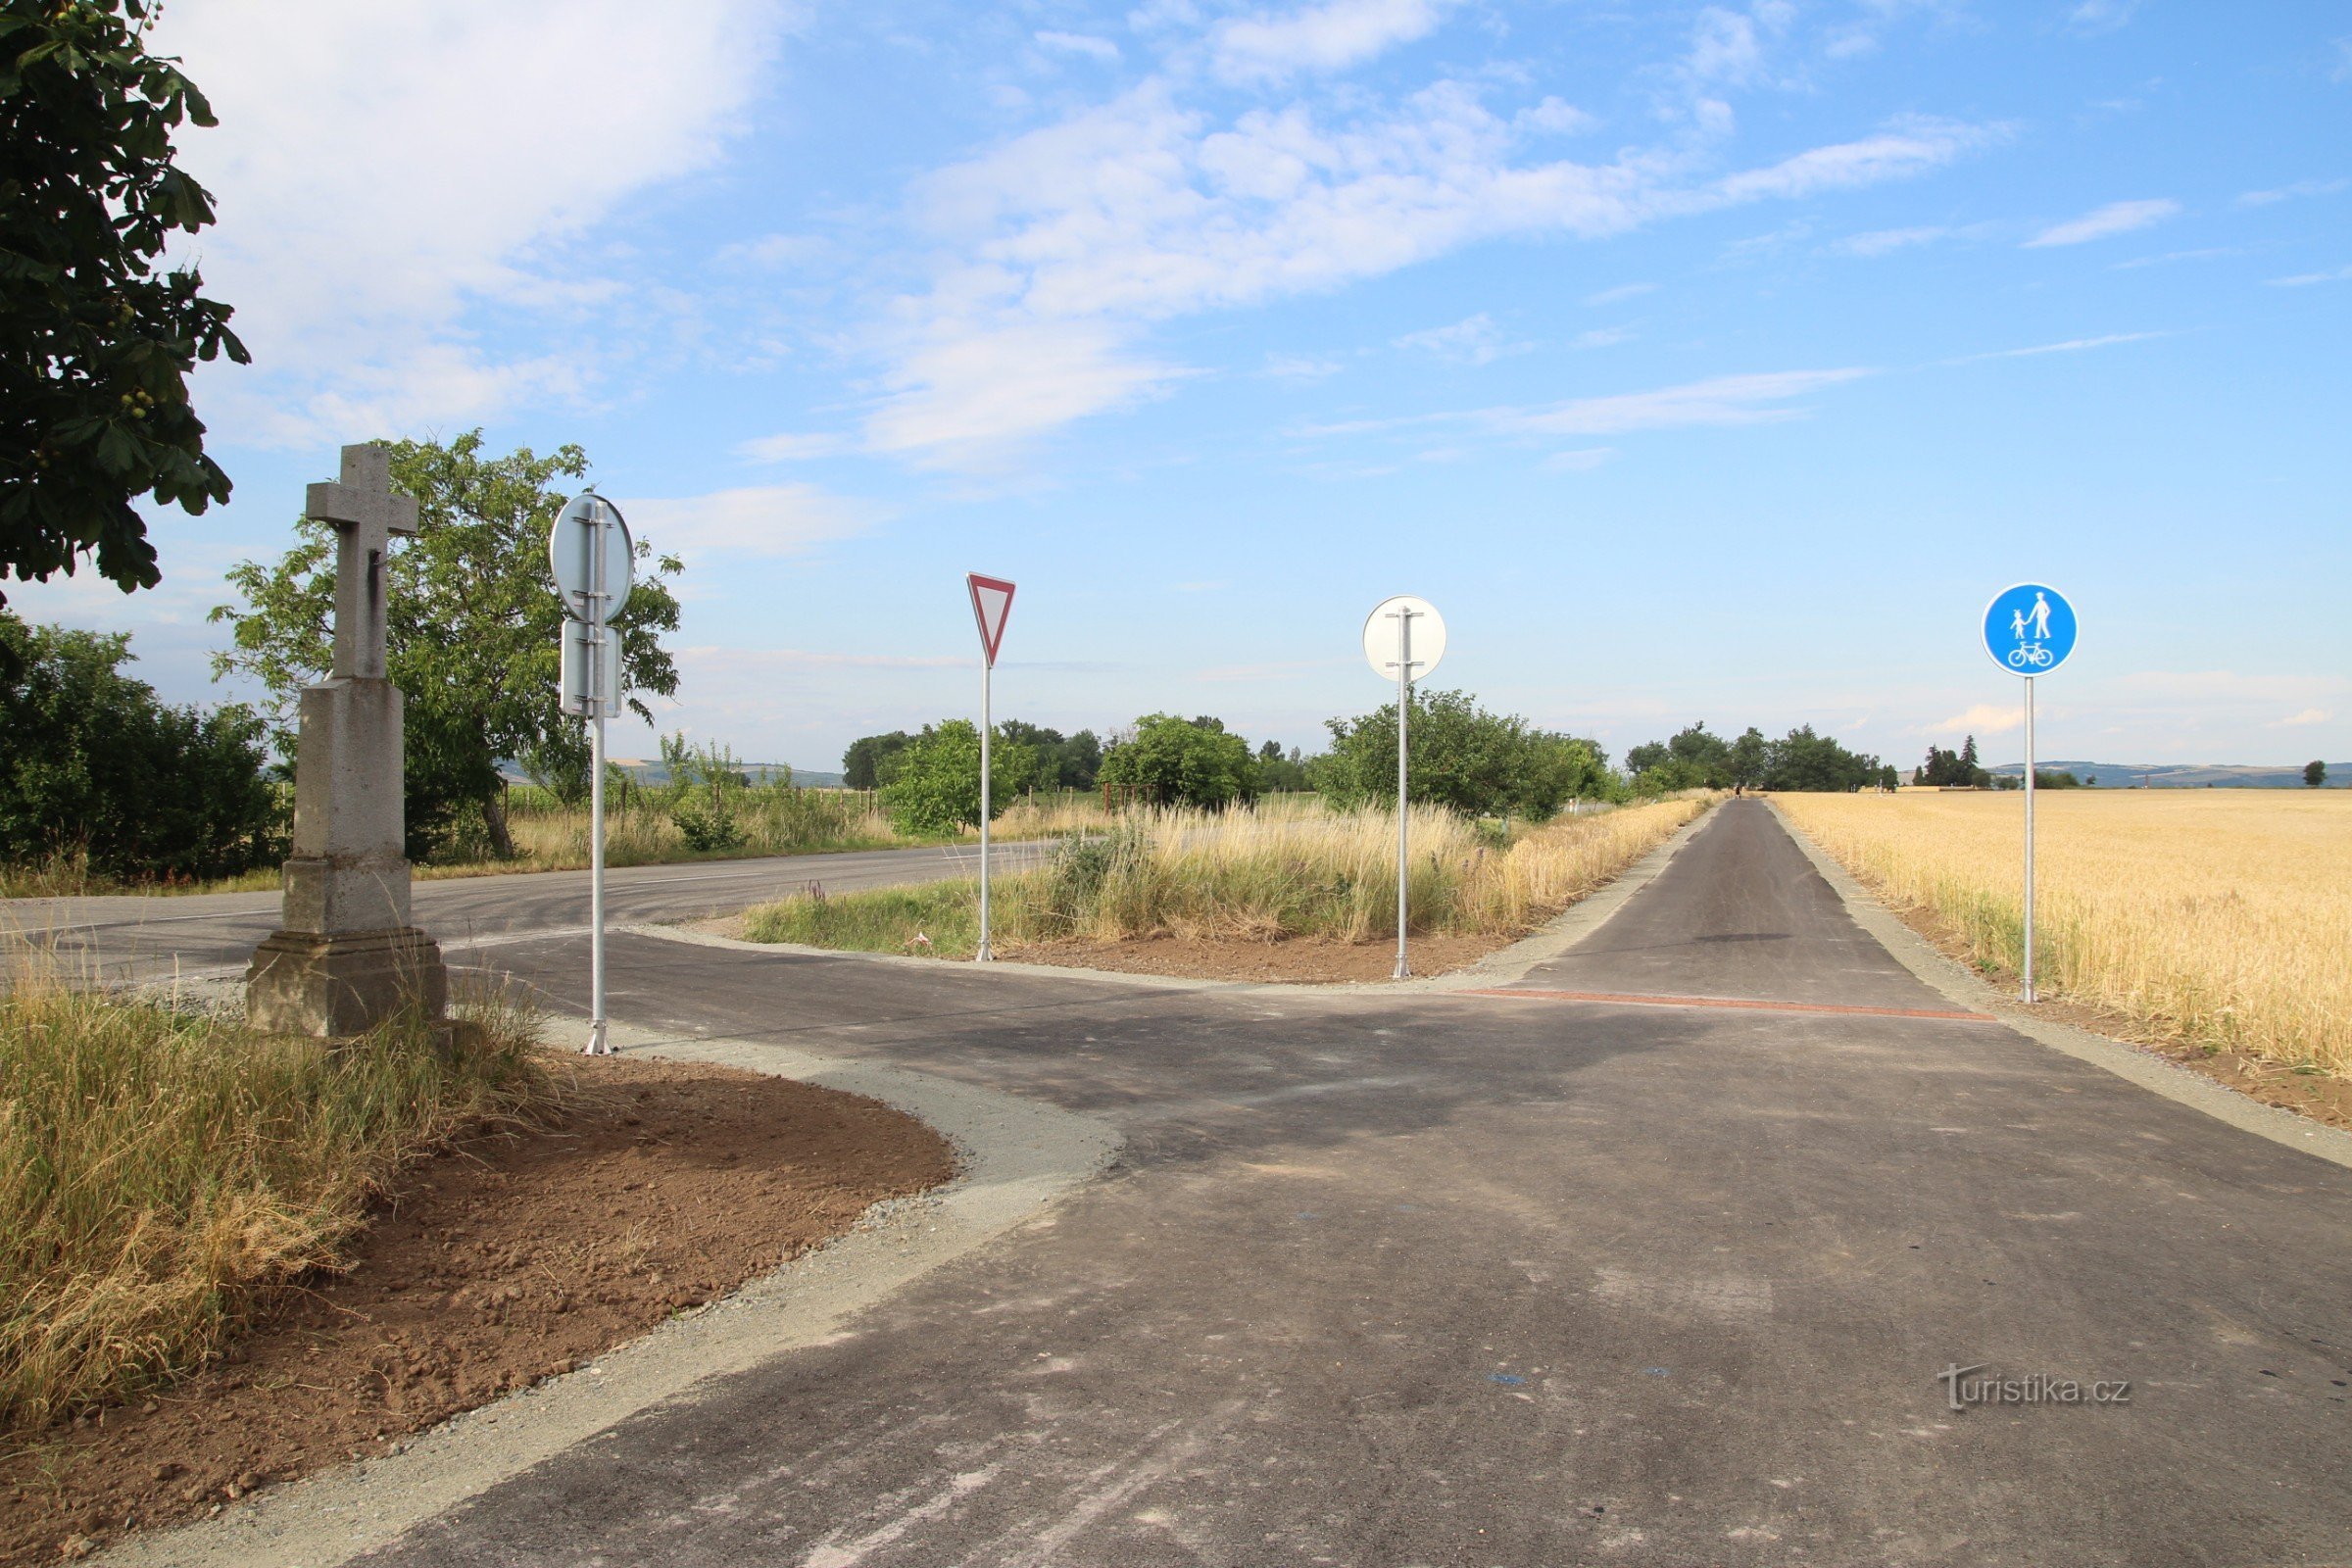 La intersecția noilor drumuri asfaltate de la intersecția dintre Vranicice și Přibice